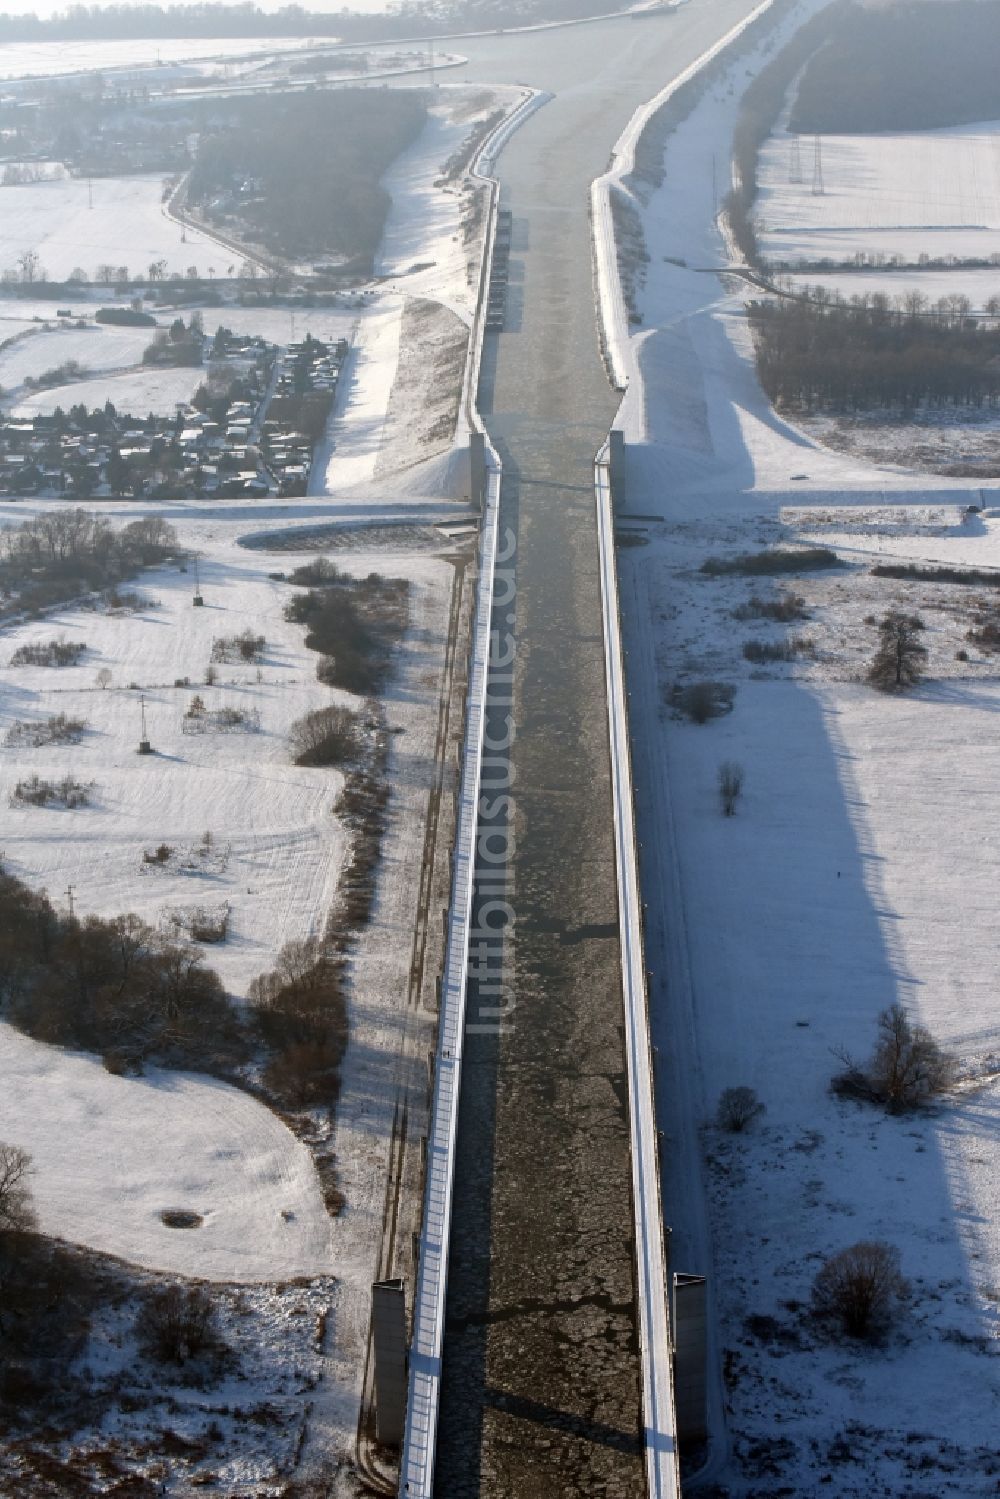 Luftbild Hohenwarthe - Winterlich Schnee- und Treibeis bedeckte Trogbrücke vom Mittellandkanal über die Elbe zum Elbe-Havel-Kanal am Wasserstraßenkreuz MD bei Hohenwarthe in Sachsen-Anhalt